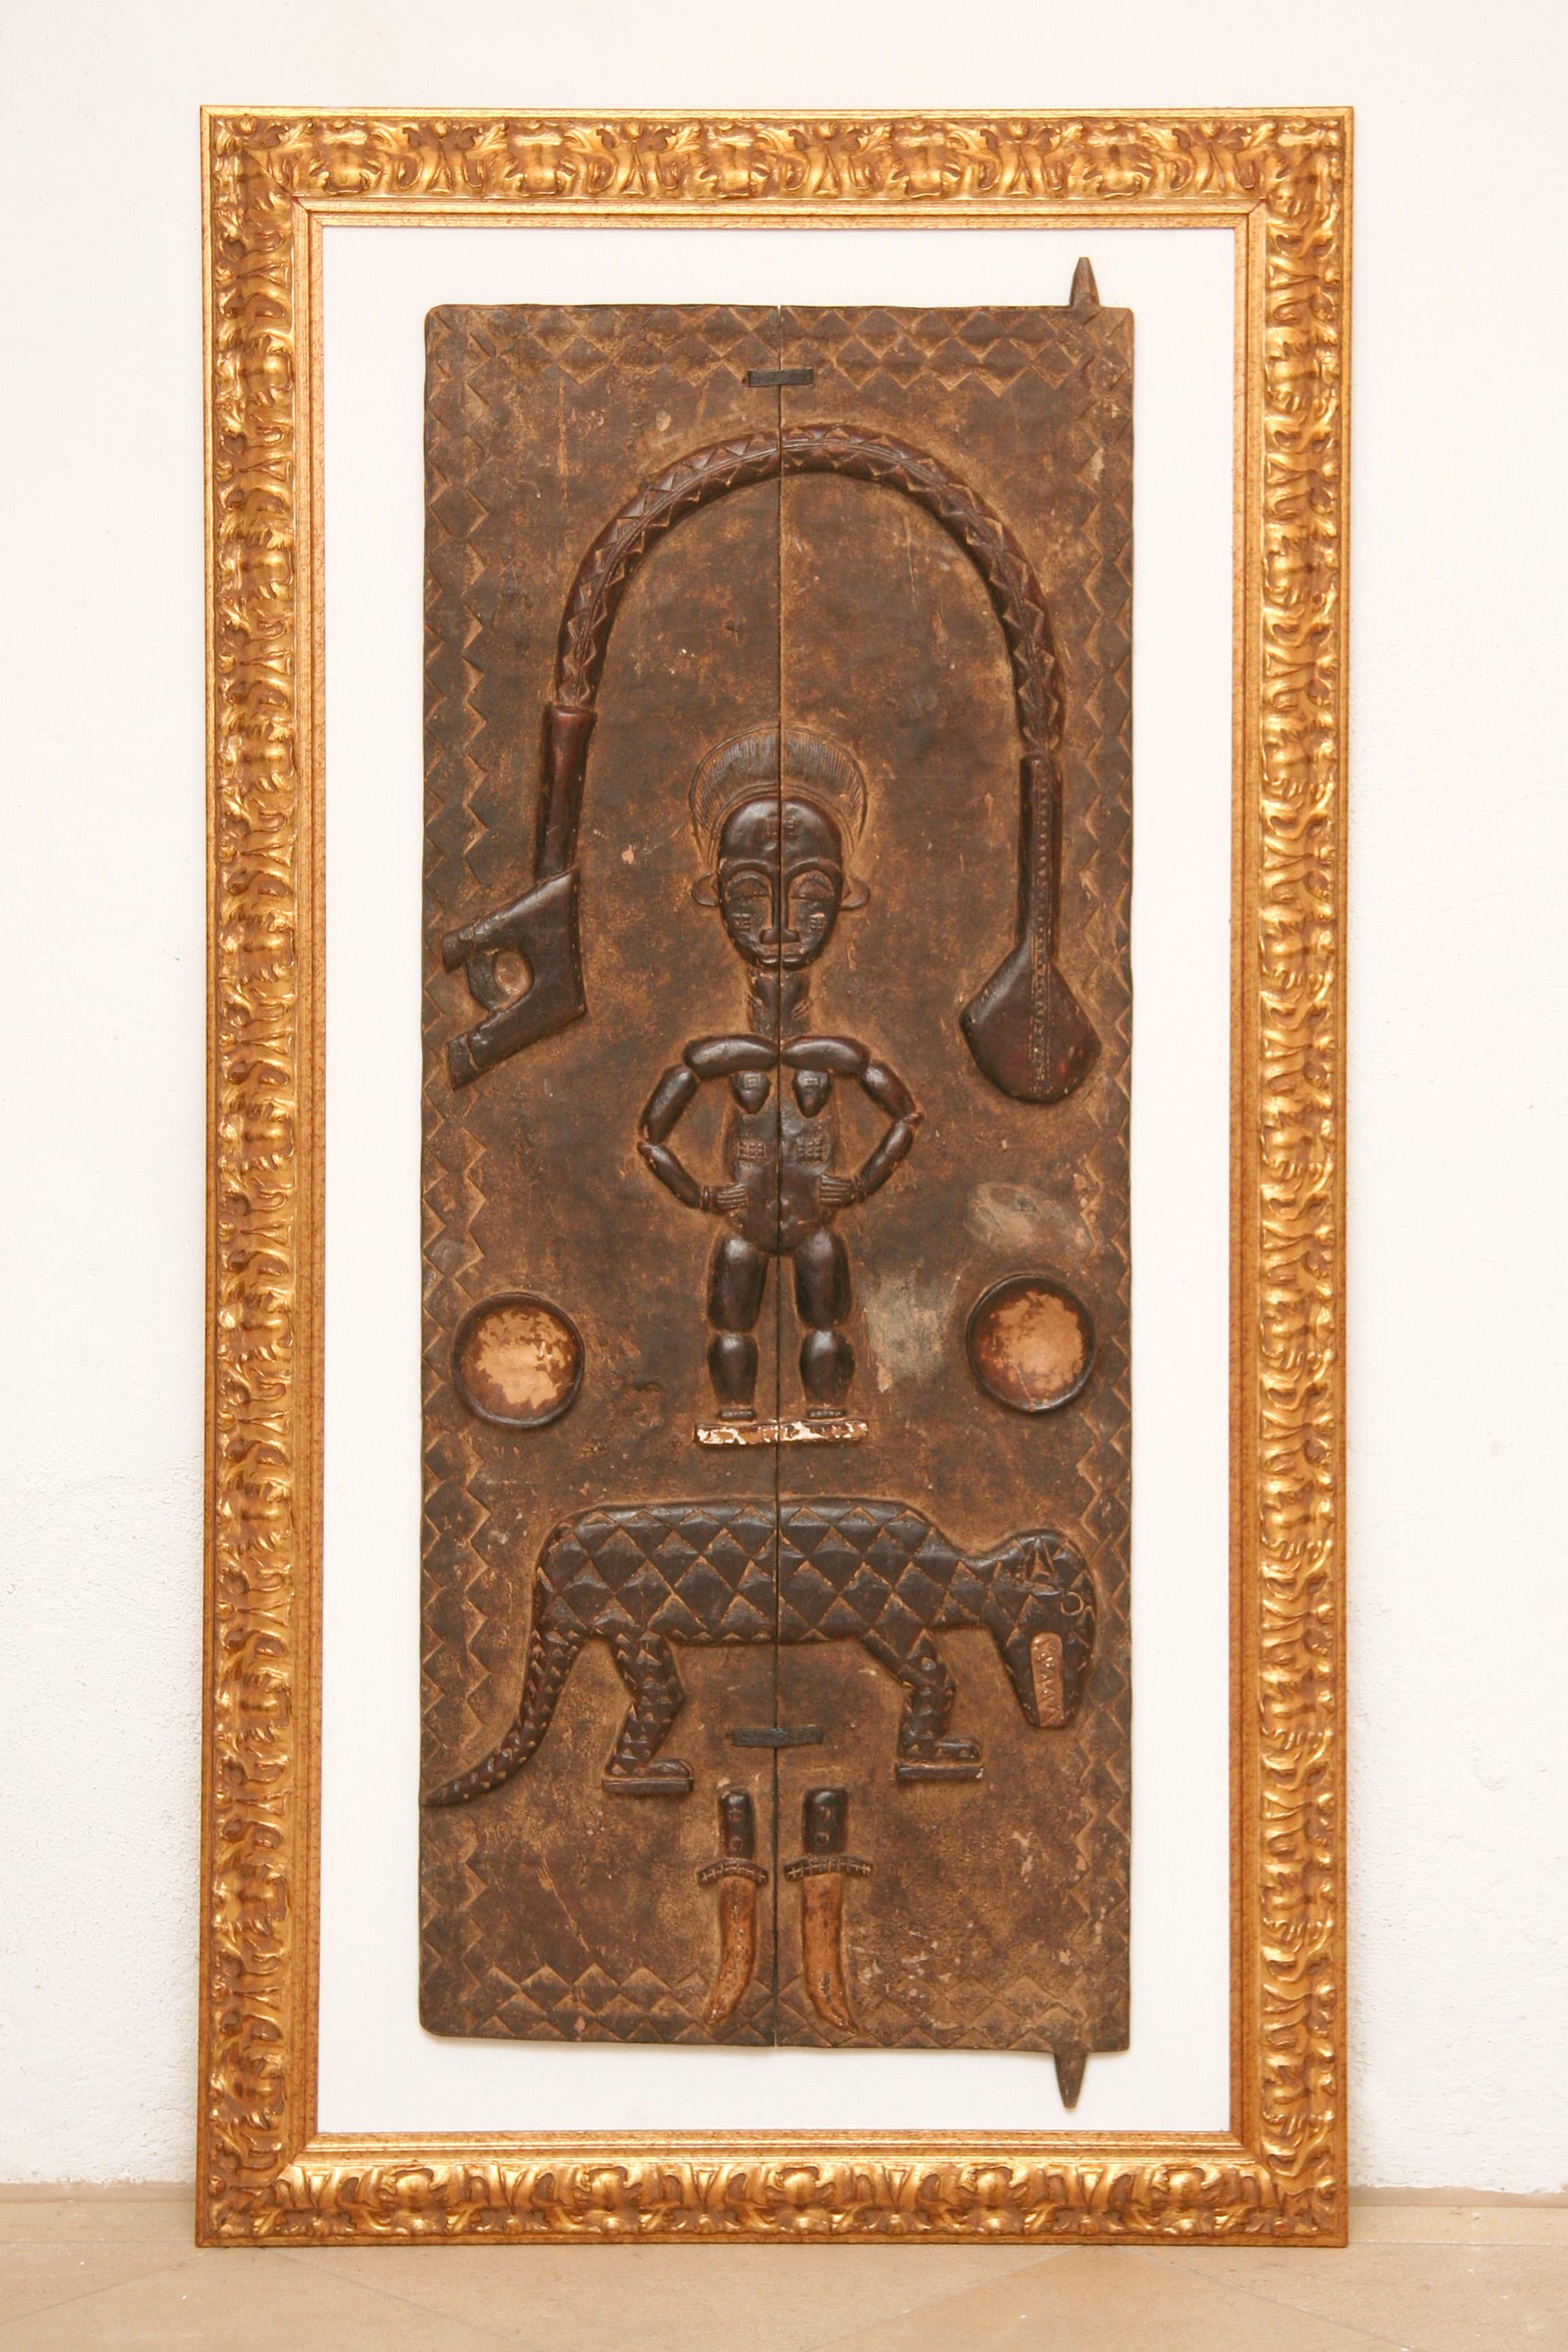 Portes en bois massif sculptées à la main d'une armoire africaine (Mali/Dogon). 
fixée sur une plaque de bois de couleur blanche, encadrée d'or.
L'objet présente des symboles africains typiques : 1 figurine, 1 arme, 1 léopard, 1 couteau. 
qui, en